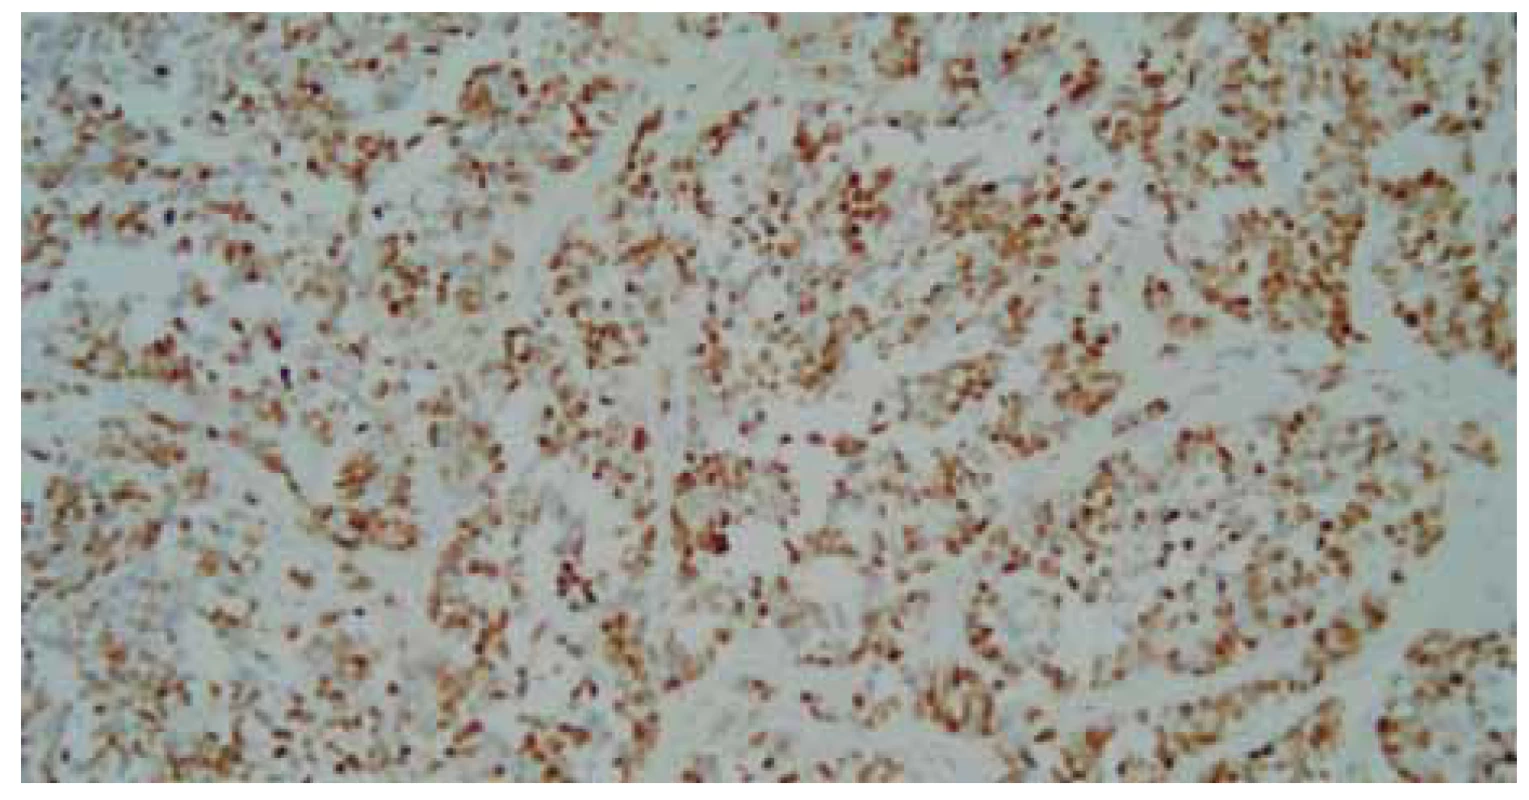 Detailnejší pohľad na malobunkovú nádorovú proliferáciu, farbenie hematoxylin-
eozinom, zväčšenie 200×.<br>
Fig. 8. A more detailed view of small cell tumour proliferation, hematoxylin eosin
staining, magnifi cation 200×.